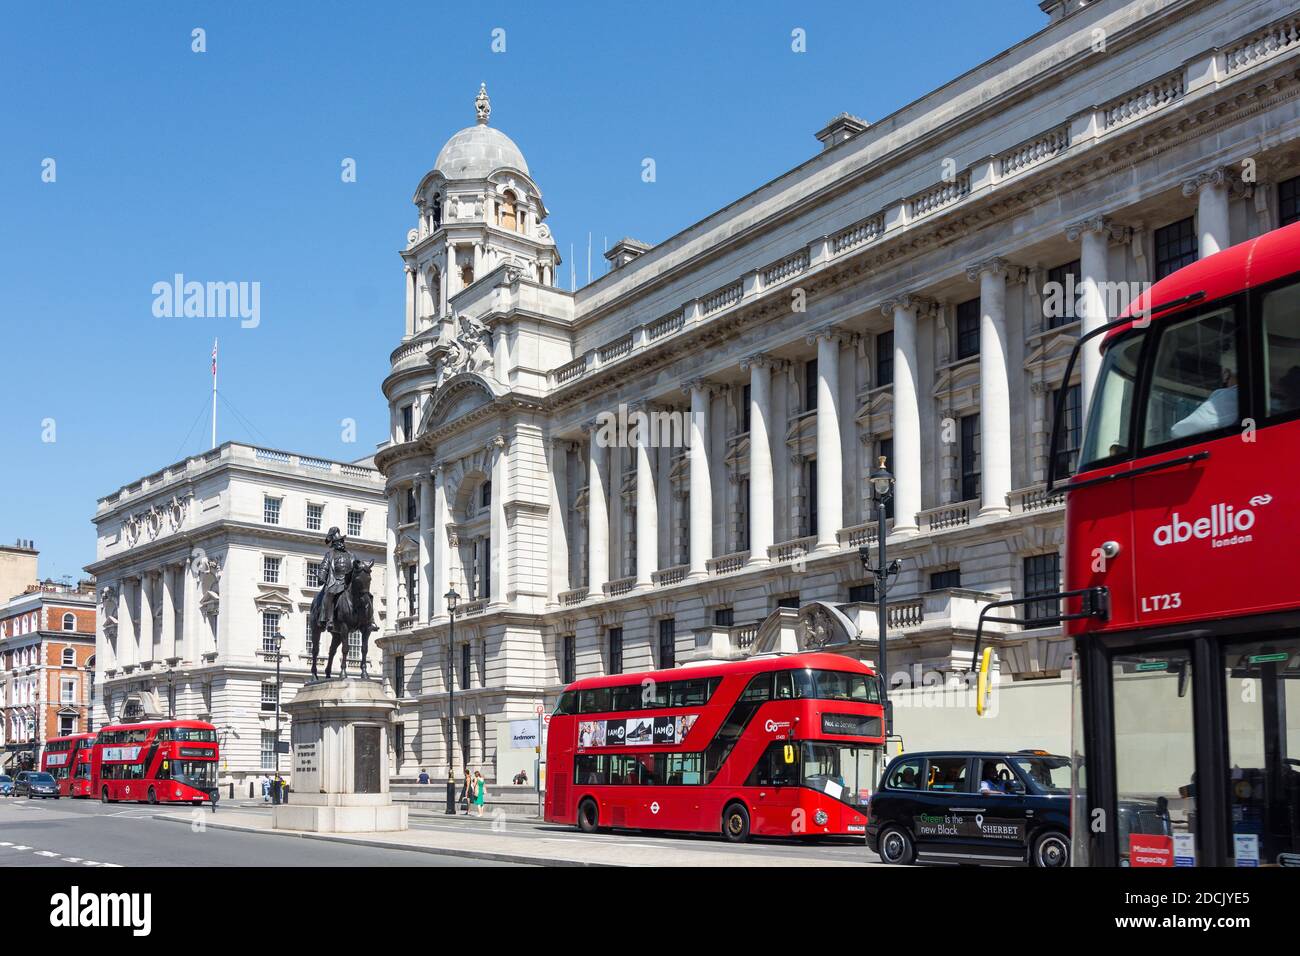 Doppeldeckerbusse vor dem Old war Office Building, Whitehall, City of Westminster, Greater London, England, Vereinigtes Königreich Stockfoto